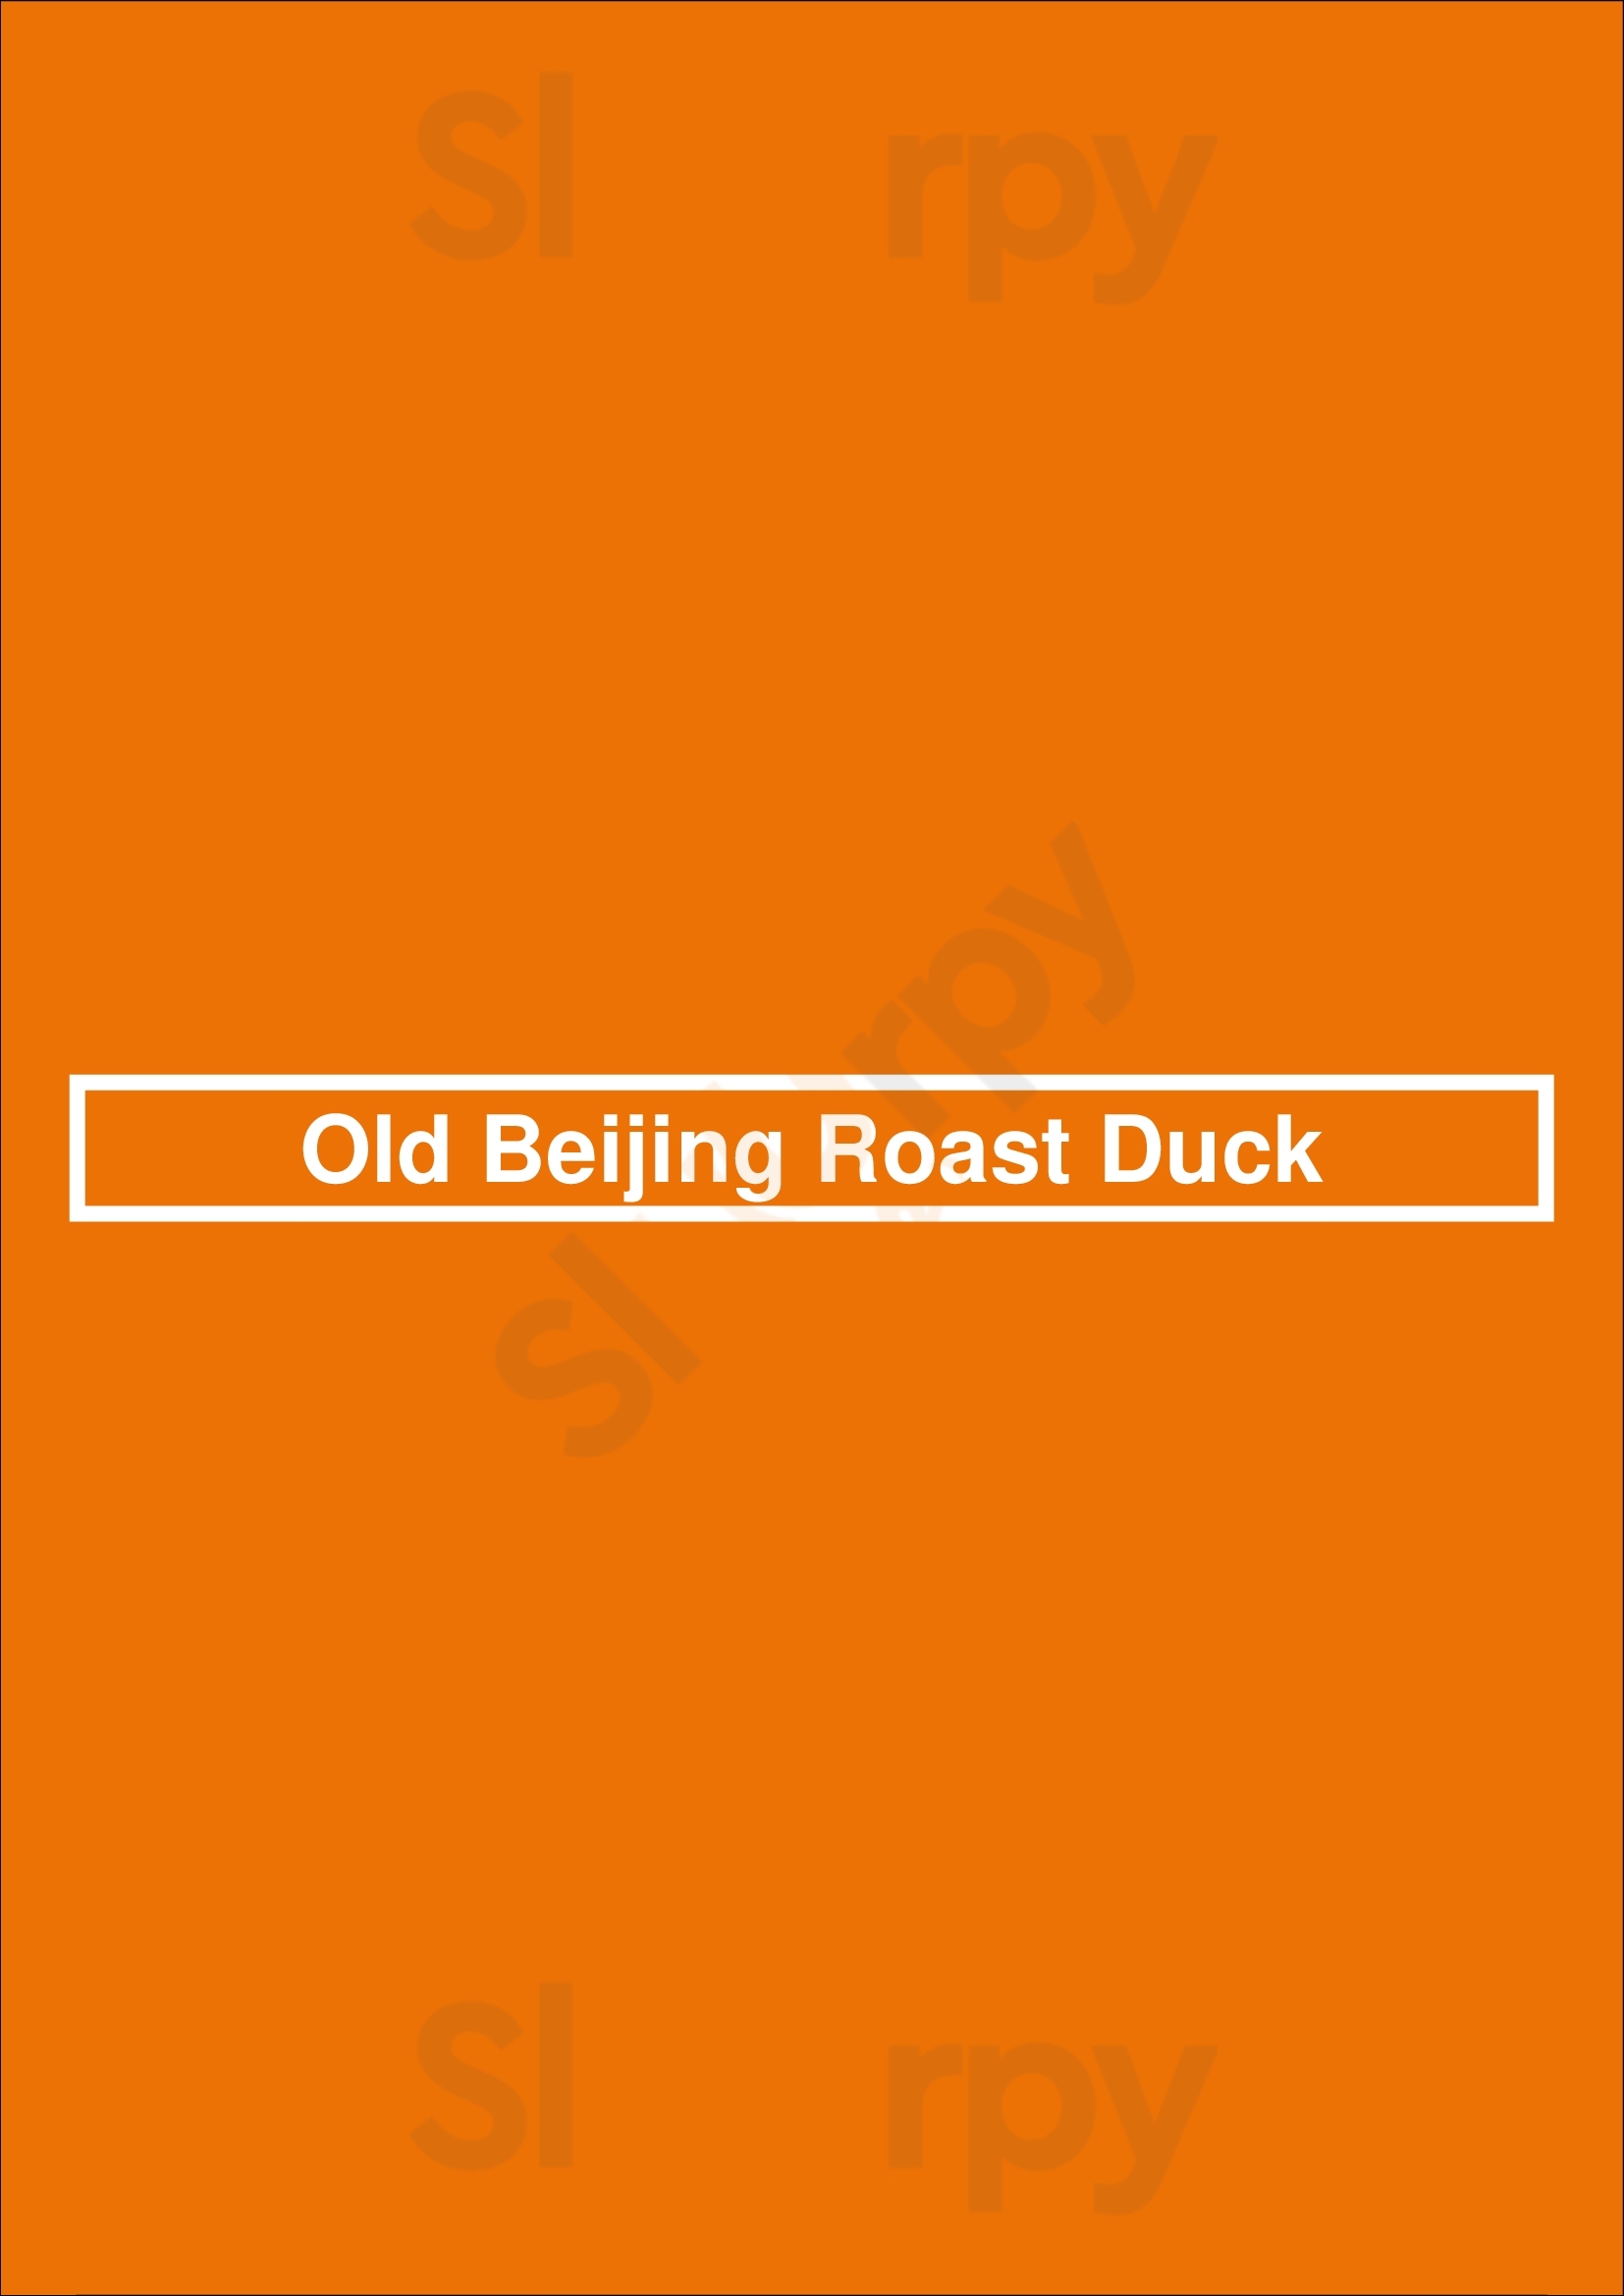 Old Beijing Roast Duck Vancouver Menu - 1